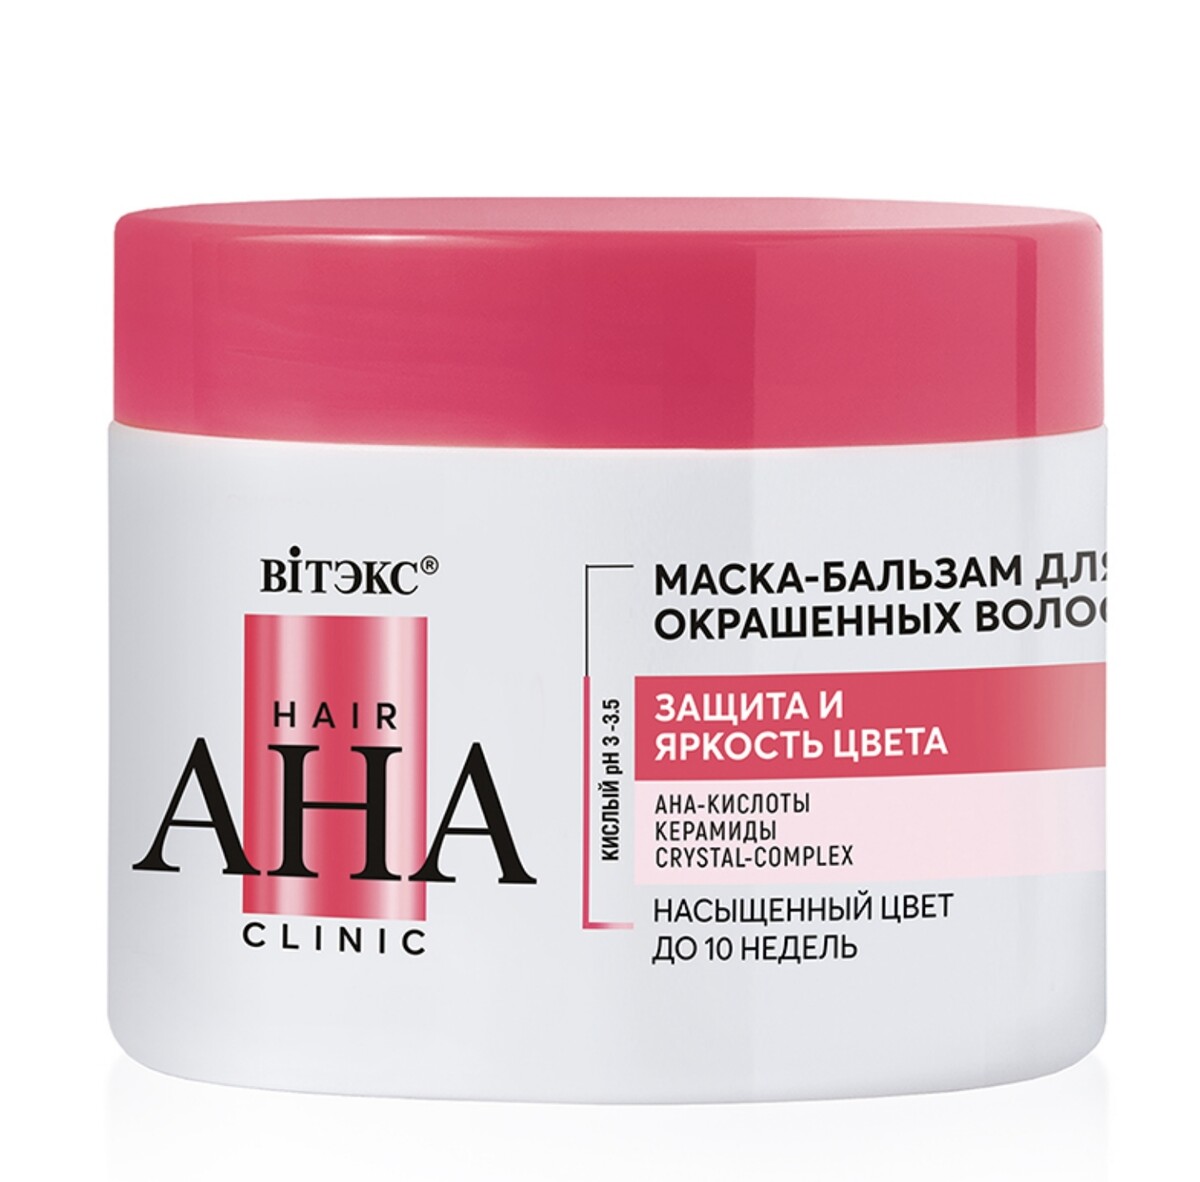 Hair aha clinic маска-бальзам для окрашенных волос защита и яркость цвета 300мл маска для волос питание и восстановление для поврежденных и окрашенных волос 220 мл